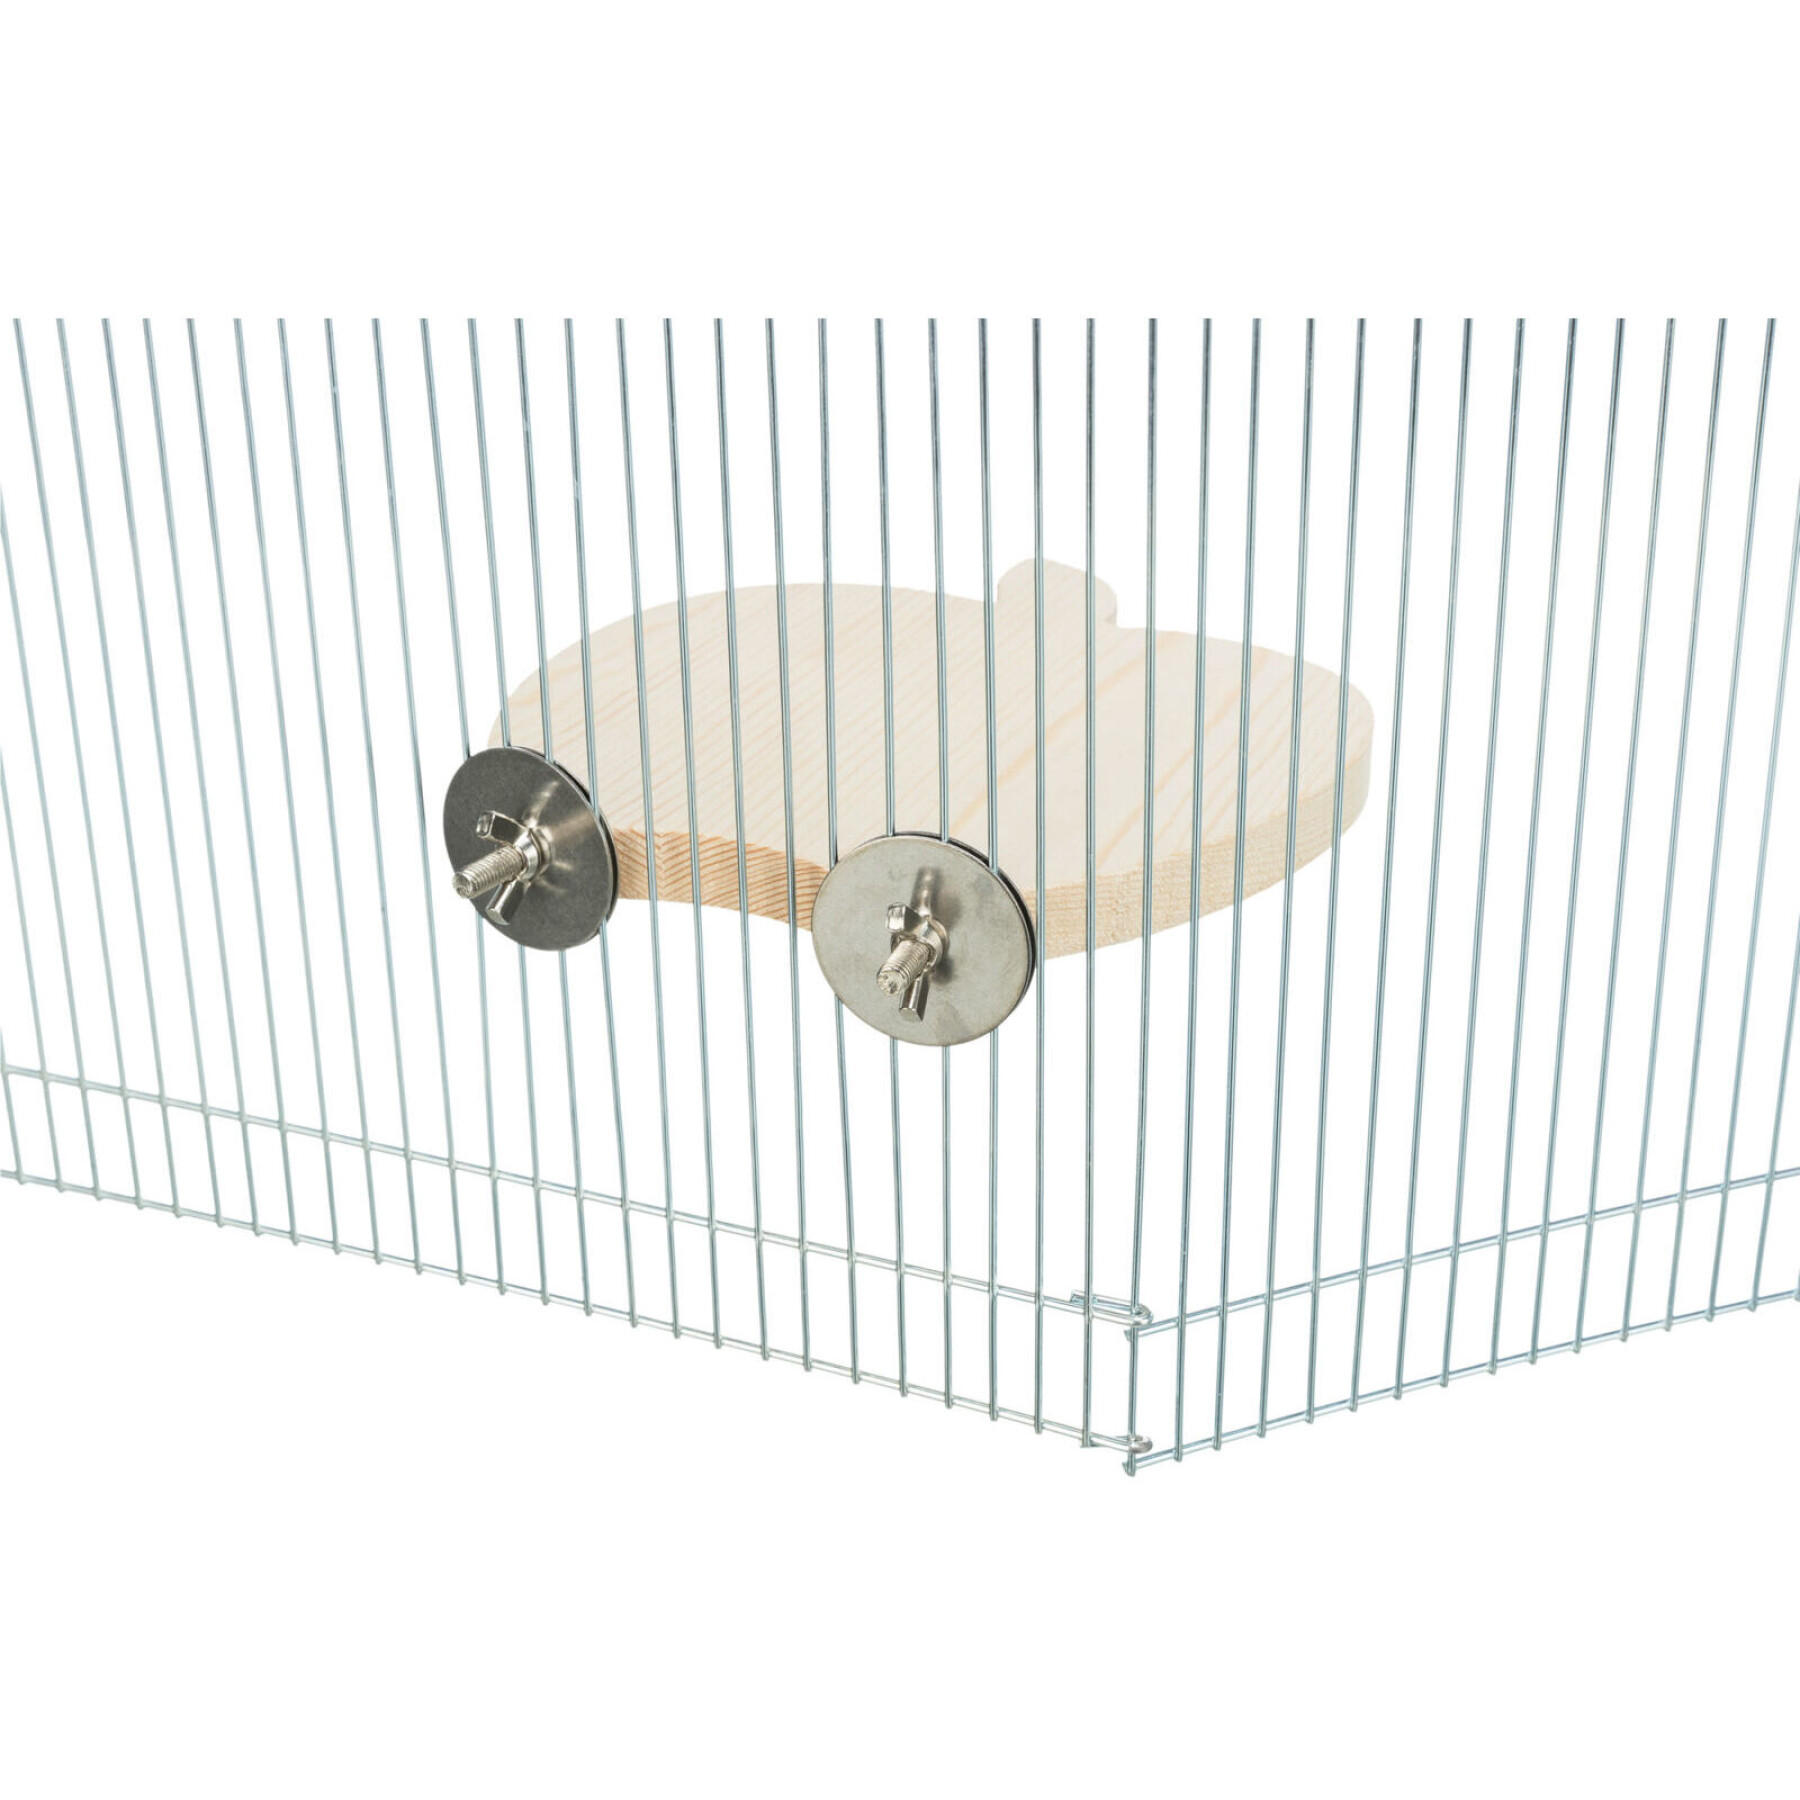 Refugio y plataforma para roedores, madera Trixie (x3)